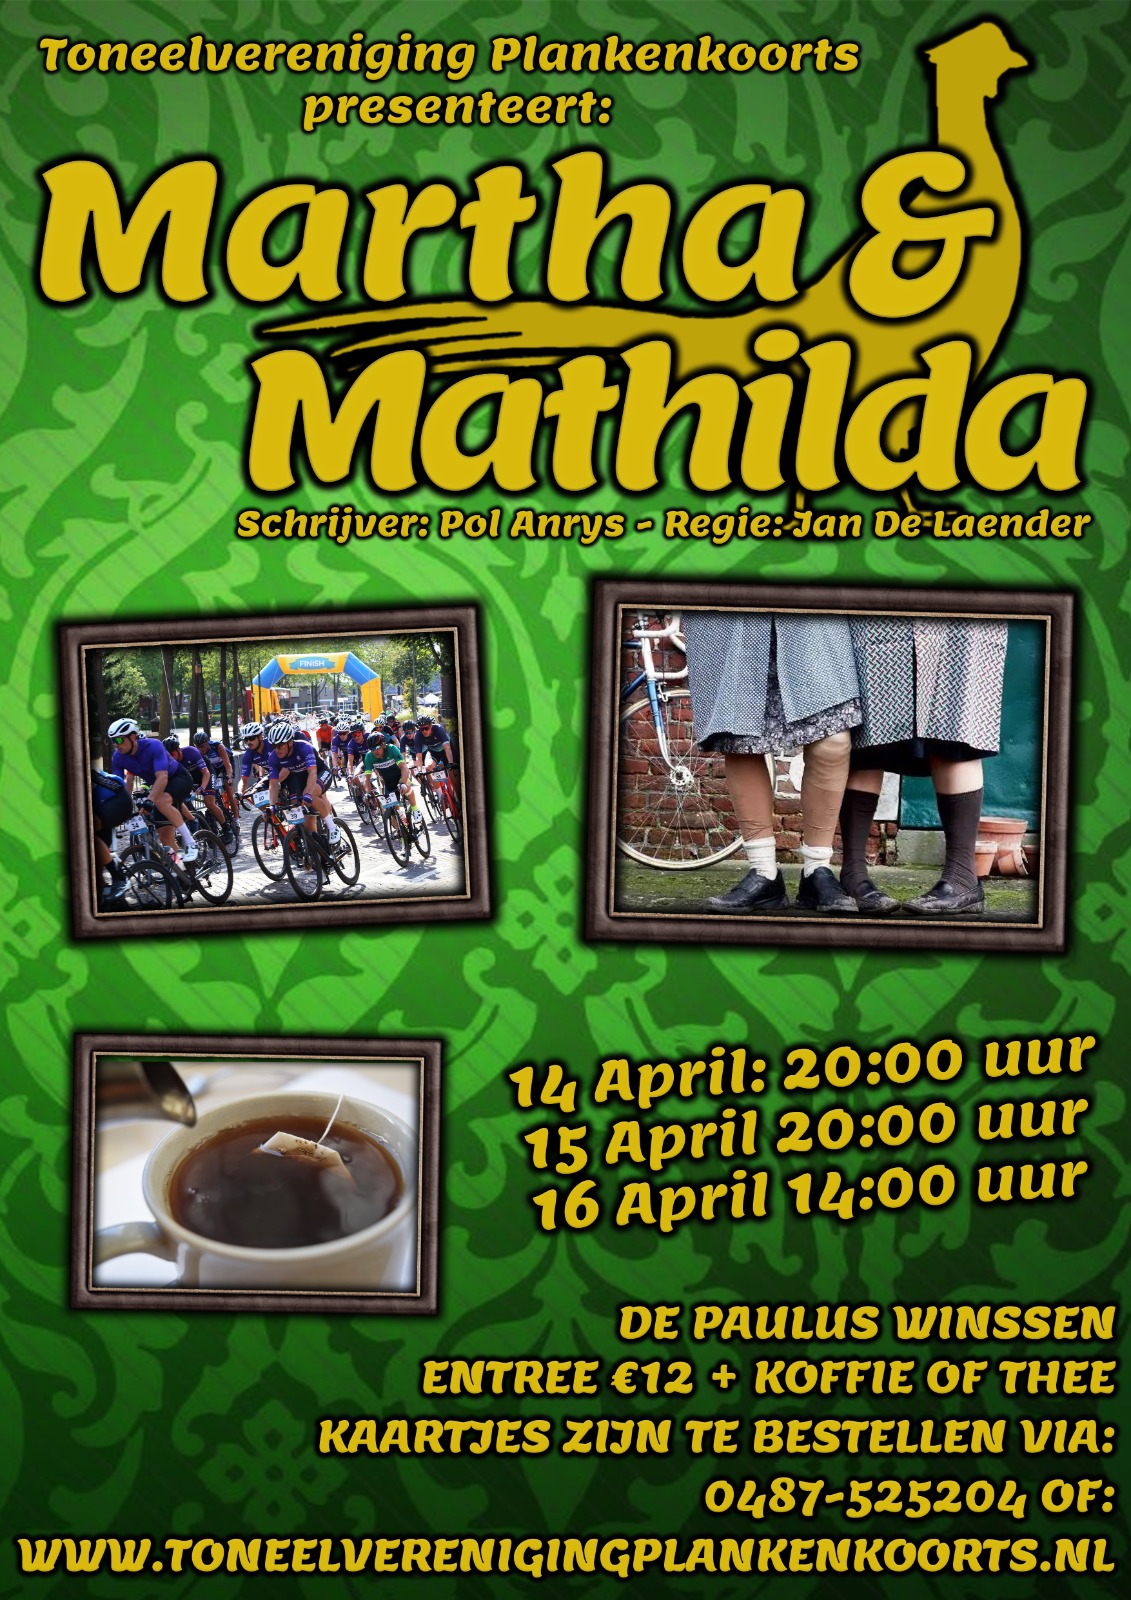 Poster van de voorstelling Marta en Mathilda. Op de poster staan foto's van thee, wielrenners en oude dames. 